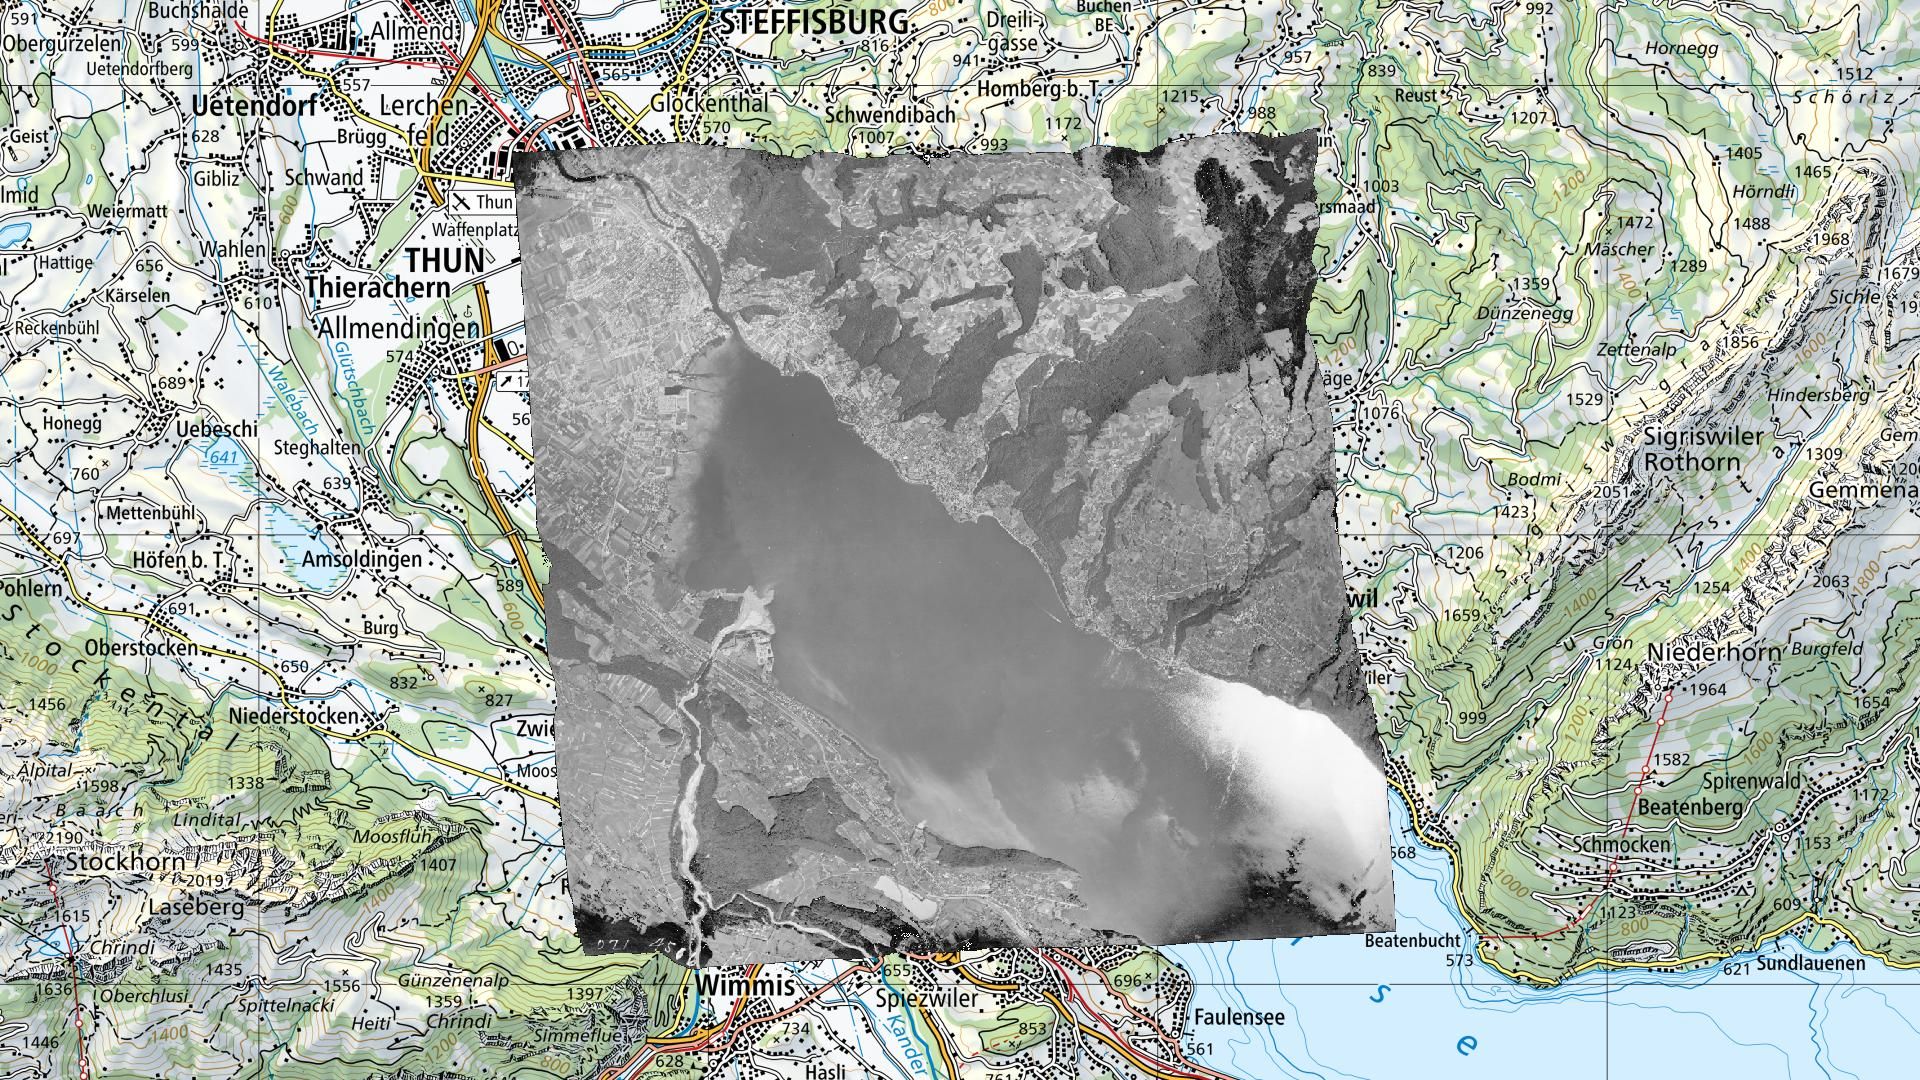 Orthophoto d'une image aérienne swisstopo n/b superposée à la carte nationale dans une application SIG.   